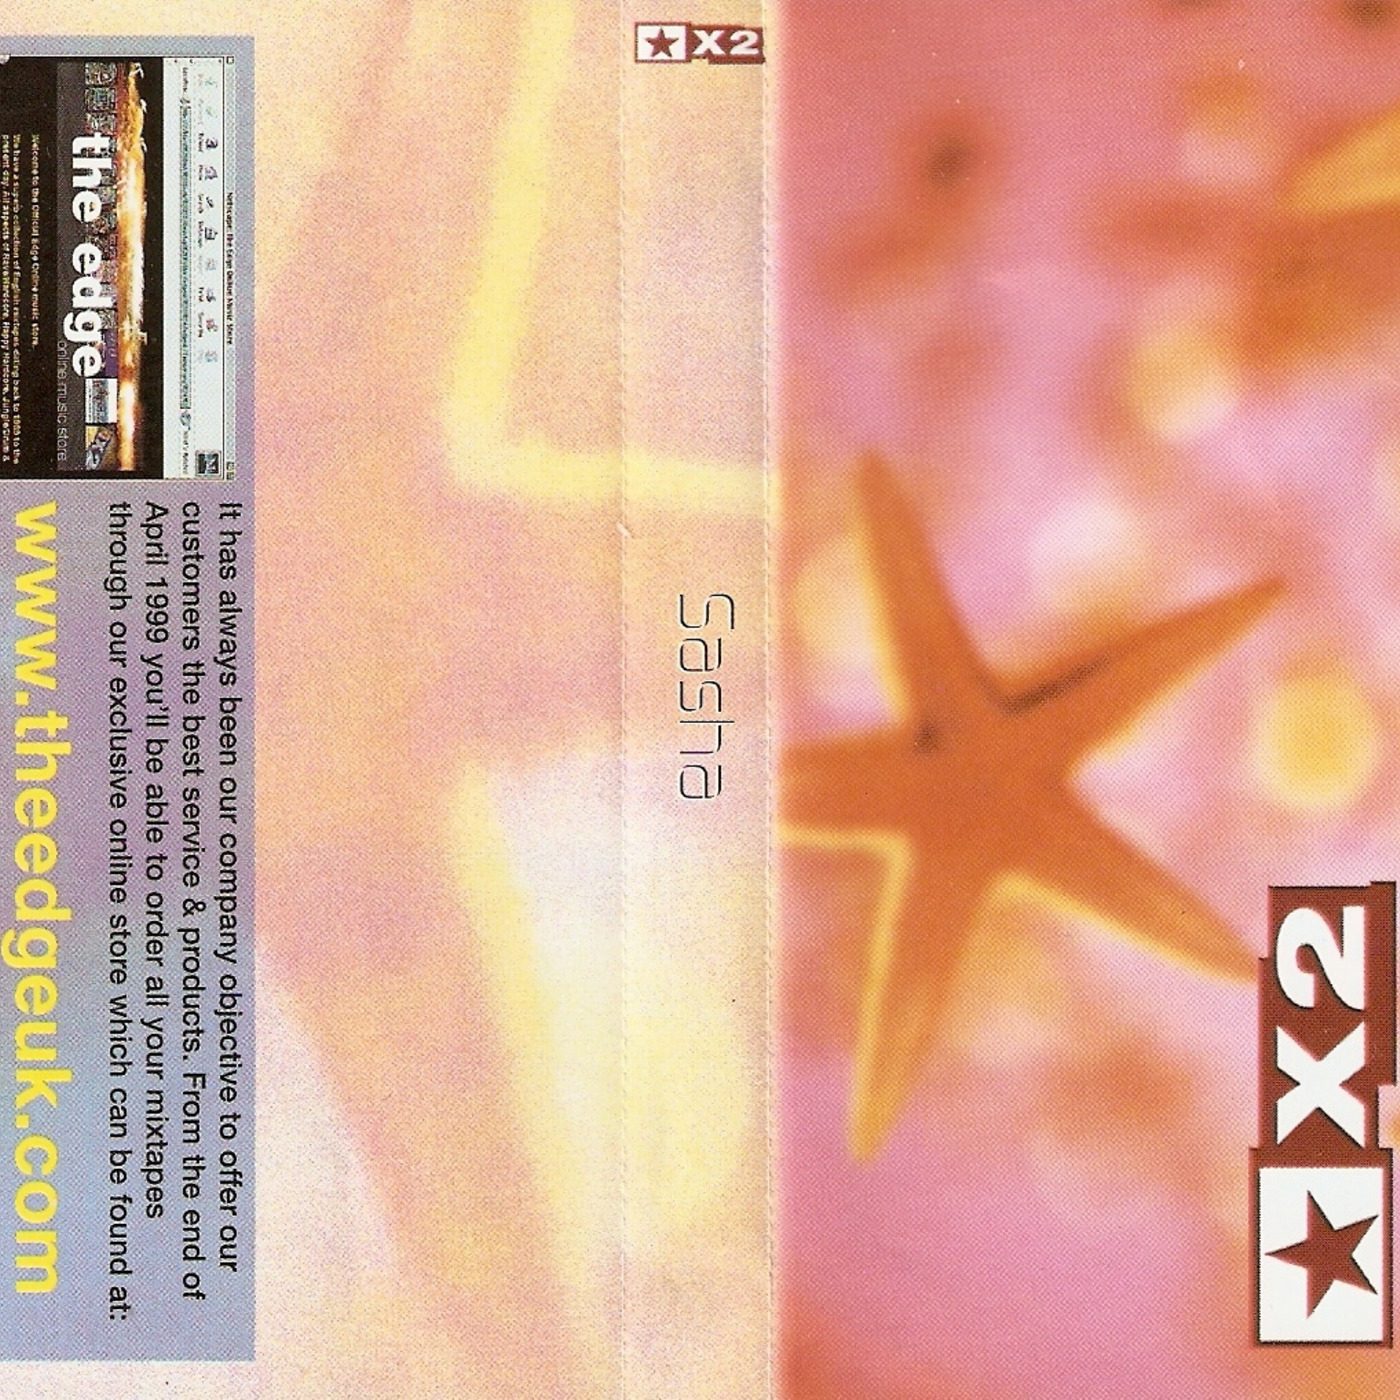 (1998) Sasha - Stars X2 Mix (Recorded Late 1998)